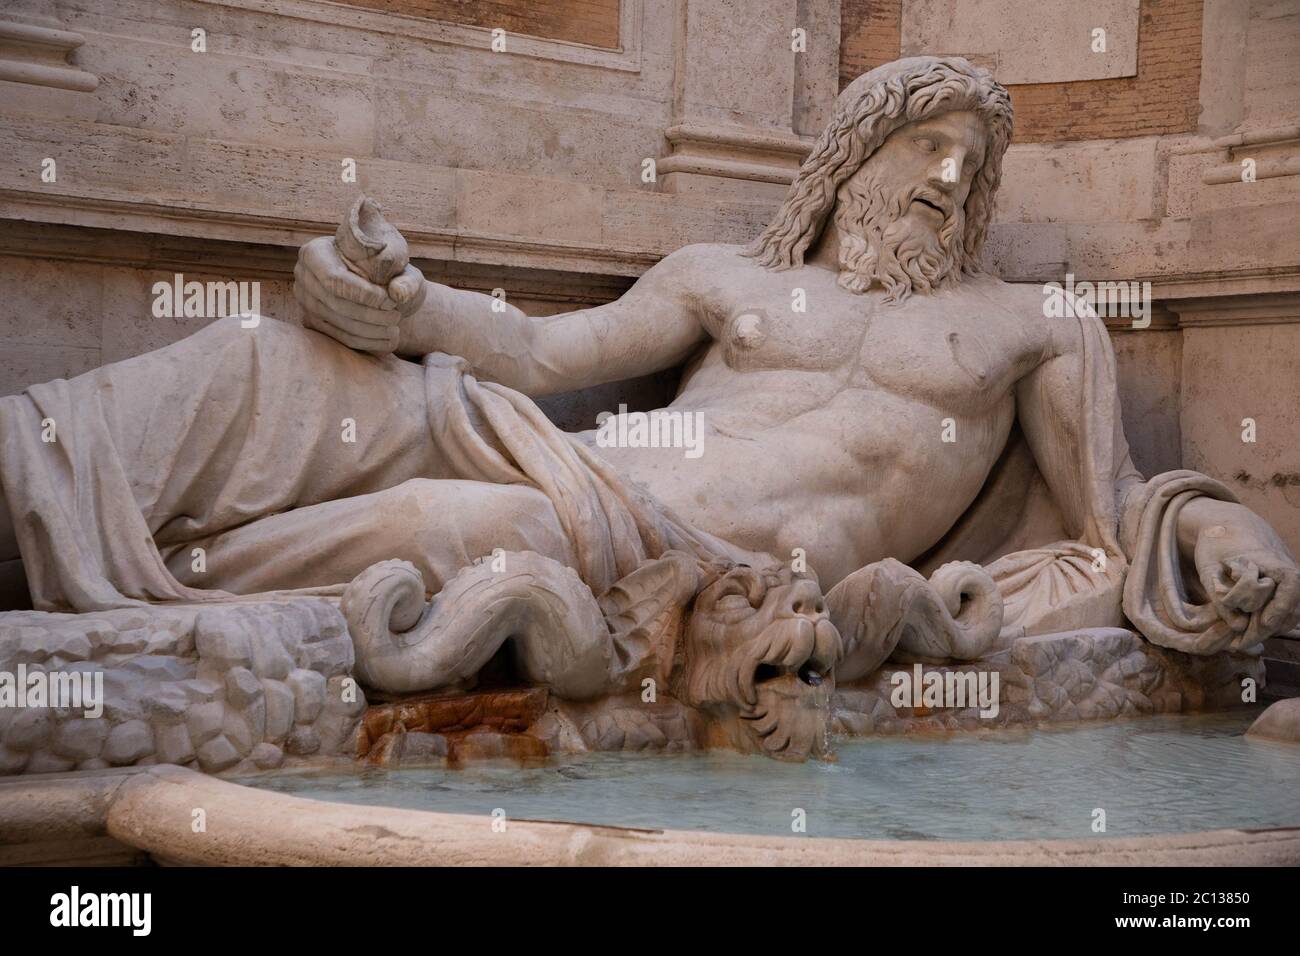 Marforio, grande fontaine de sculpture en marbre romain à l'intérieur du musée Capitoline, Rome, Italie Banque D'Images